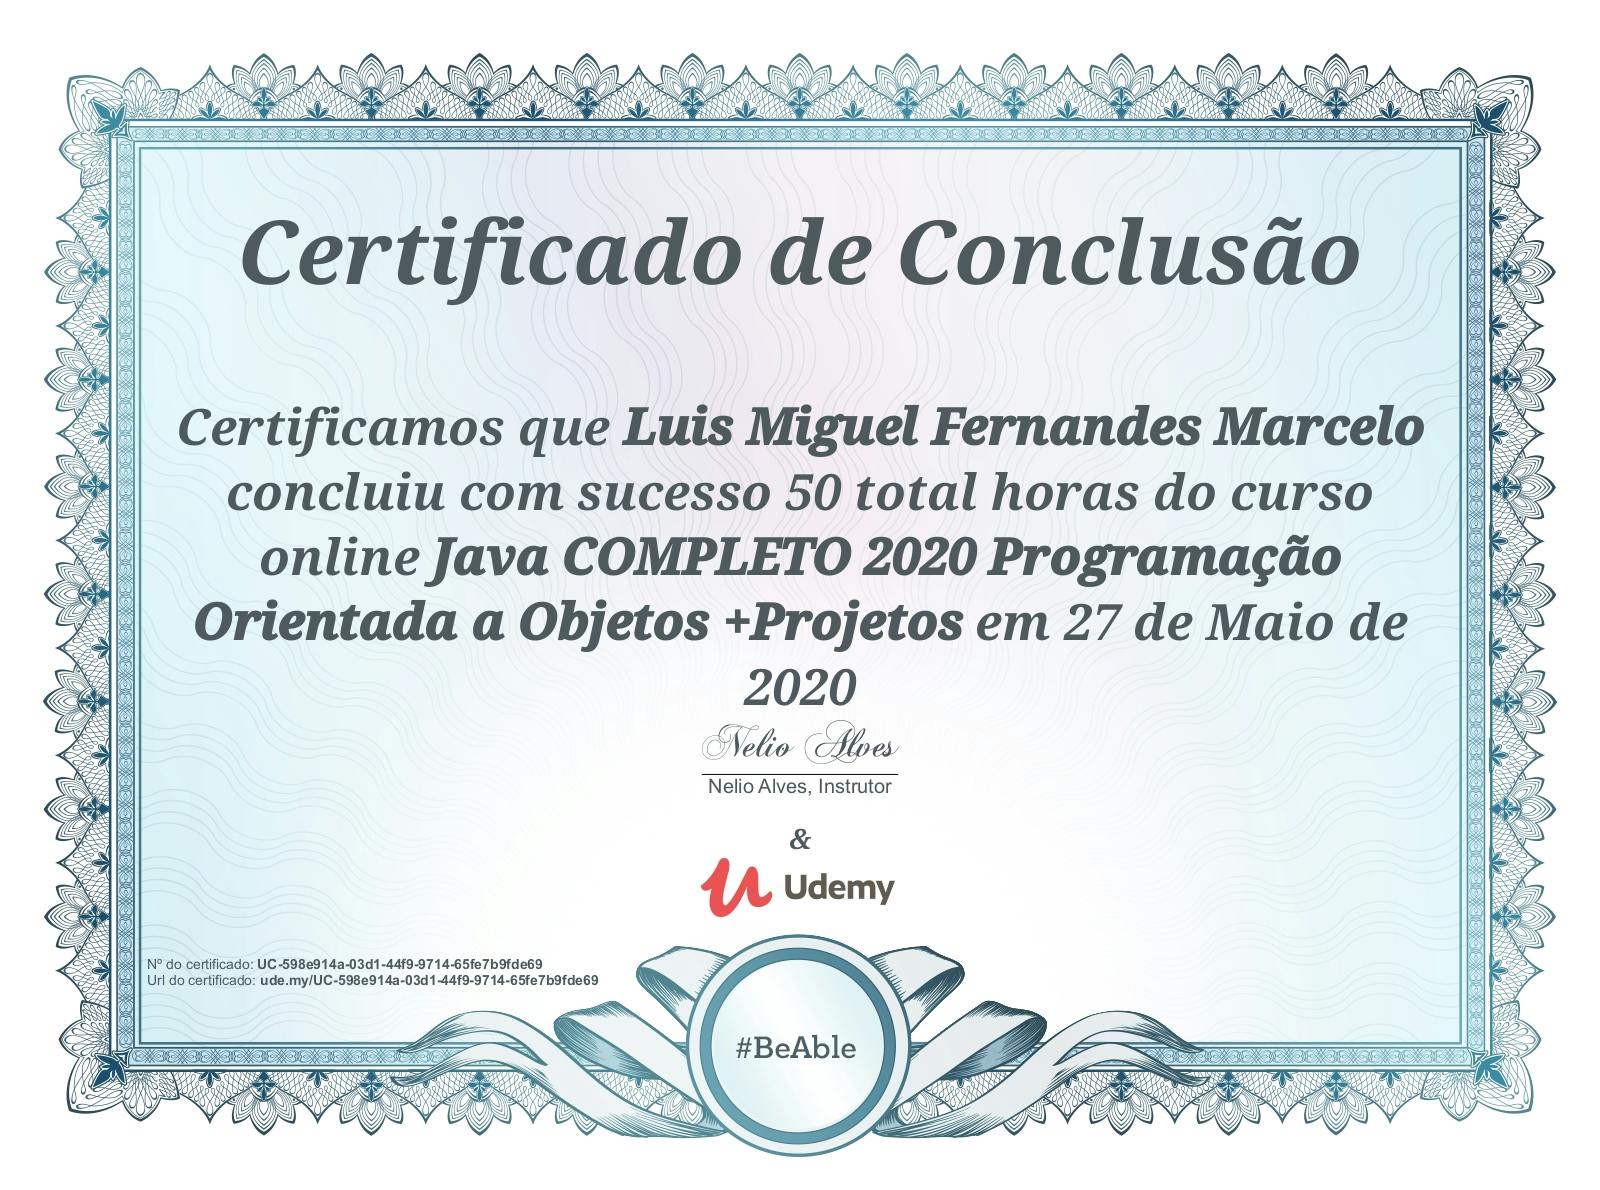 Certificado de conclusão do curso "Java COMPLETO 2020 Programação Orientada a Objeto +Projetos".